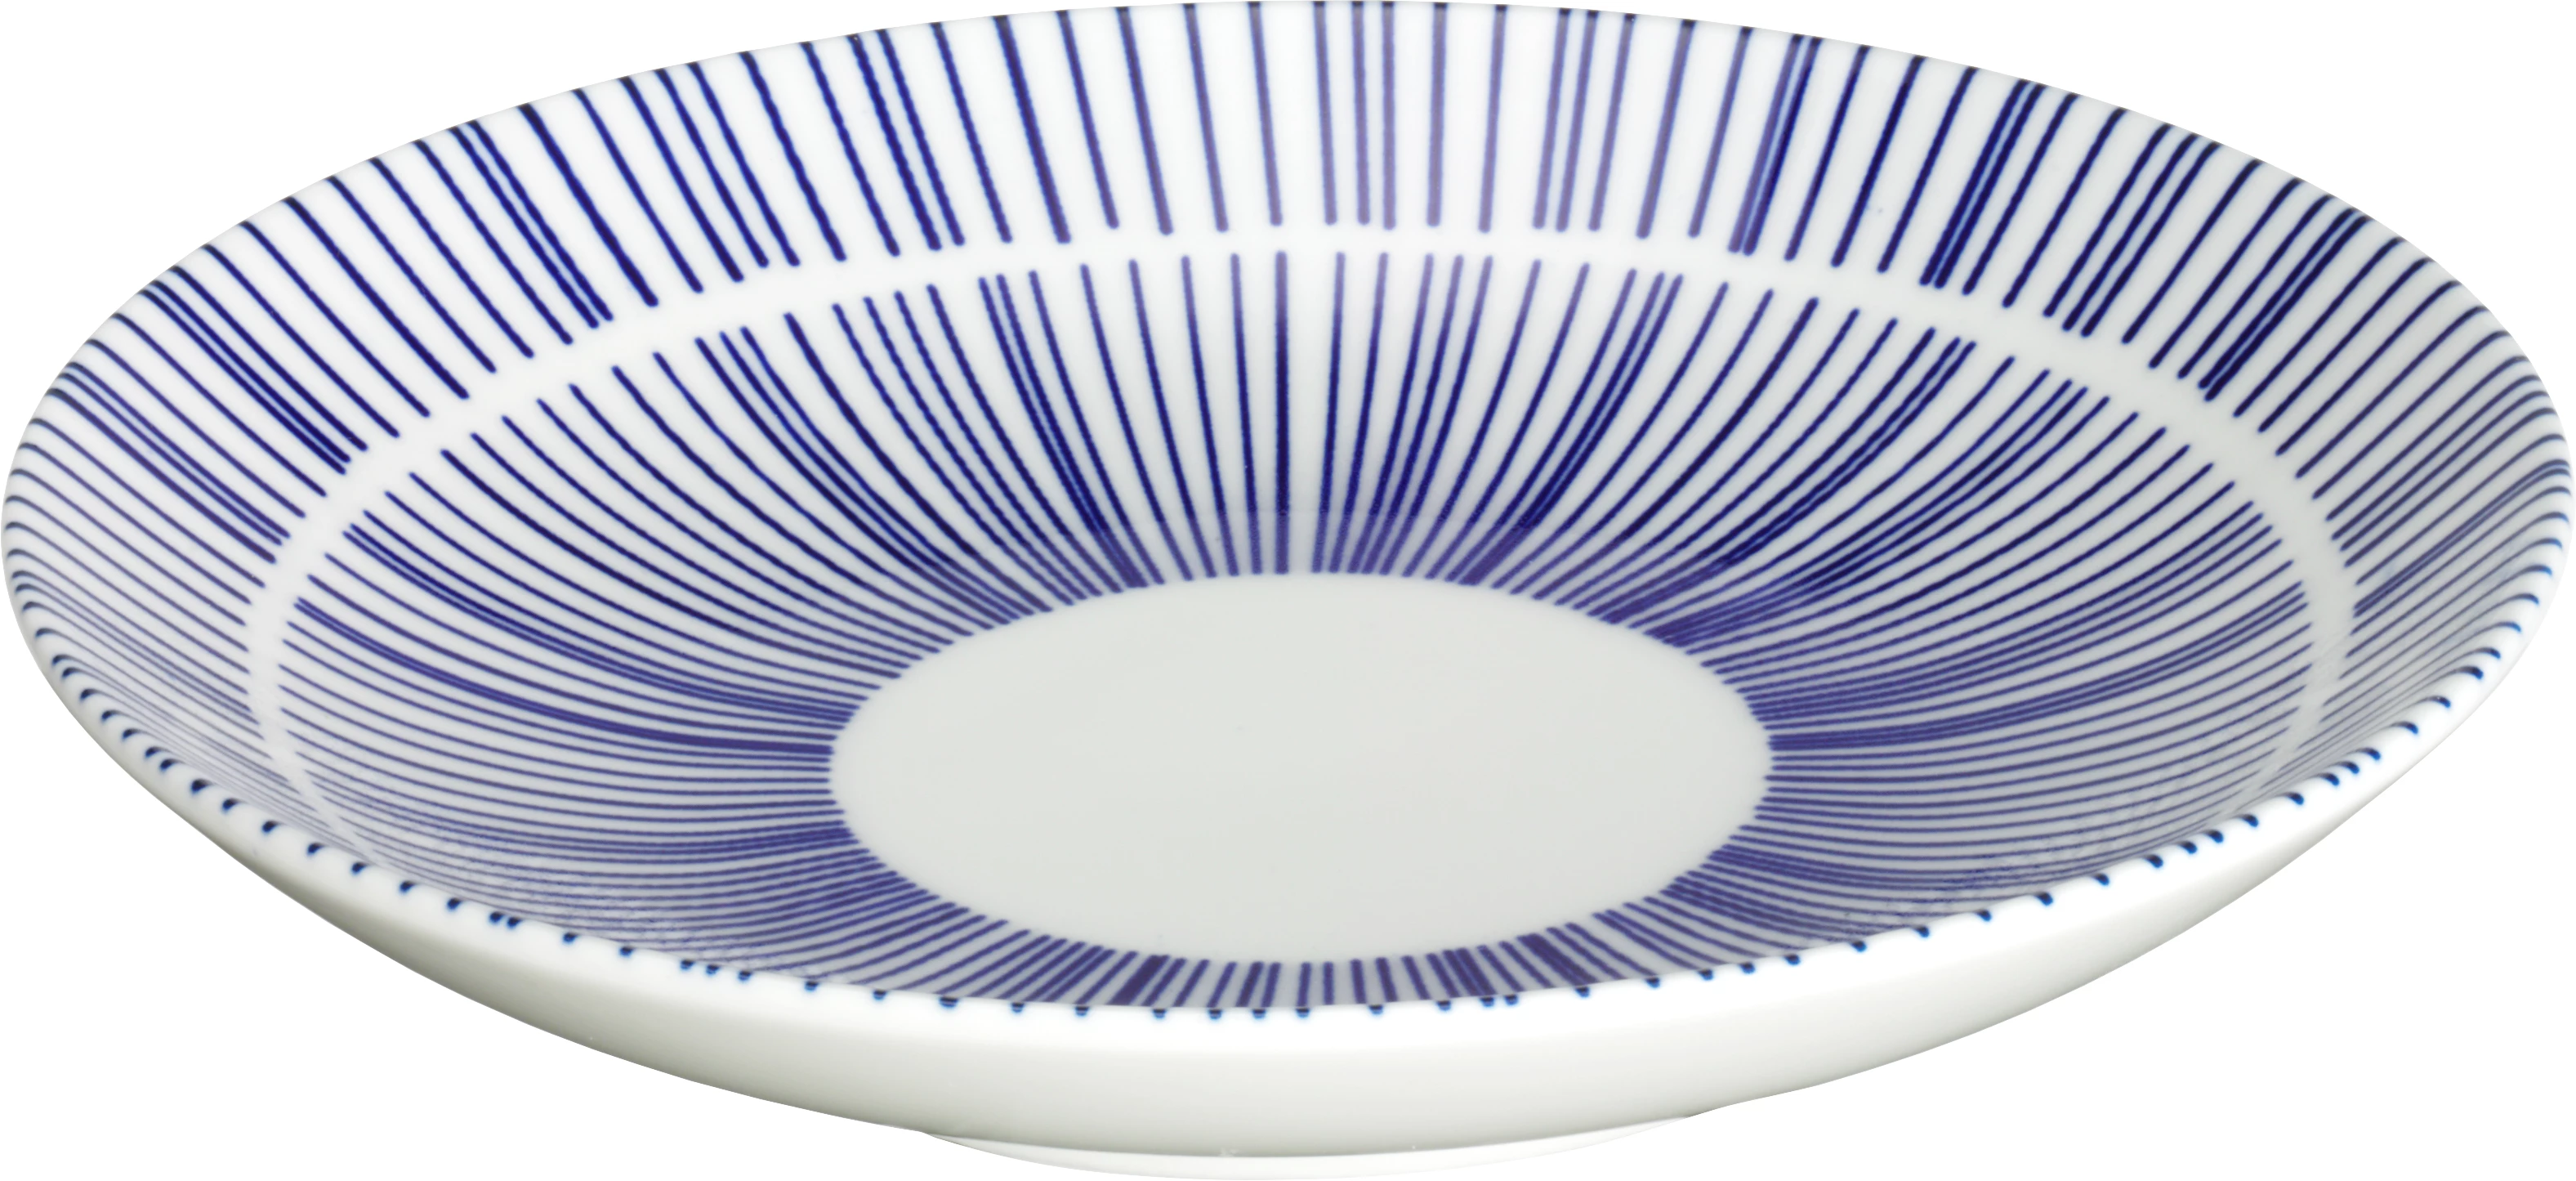 Porto flad tallerken uden fane, hvid/blå, ø15 cm